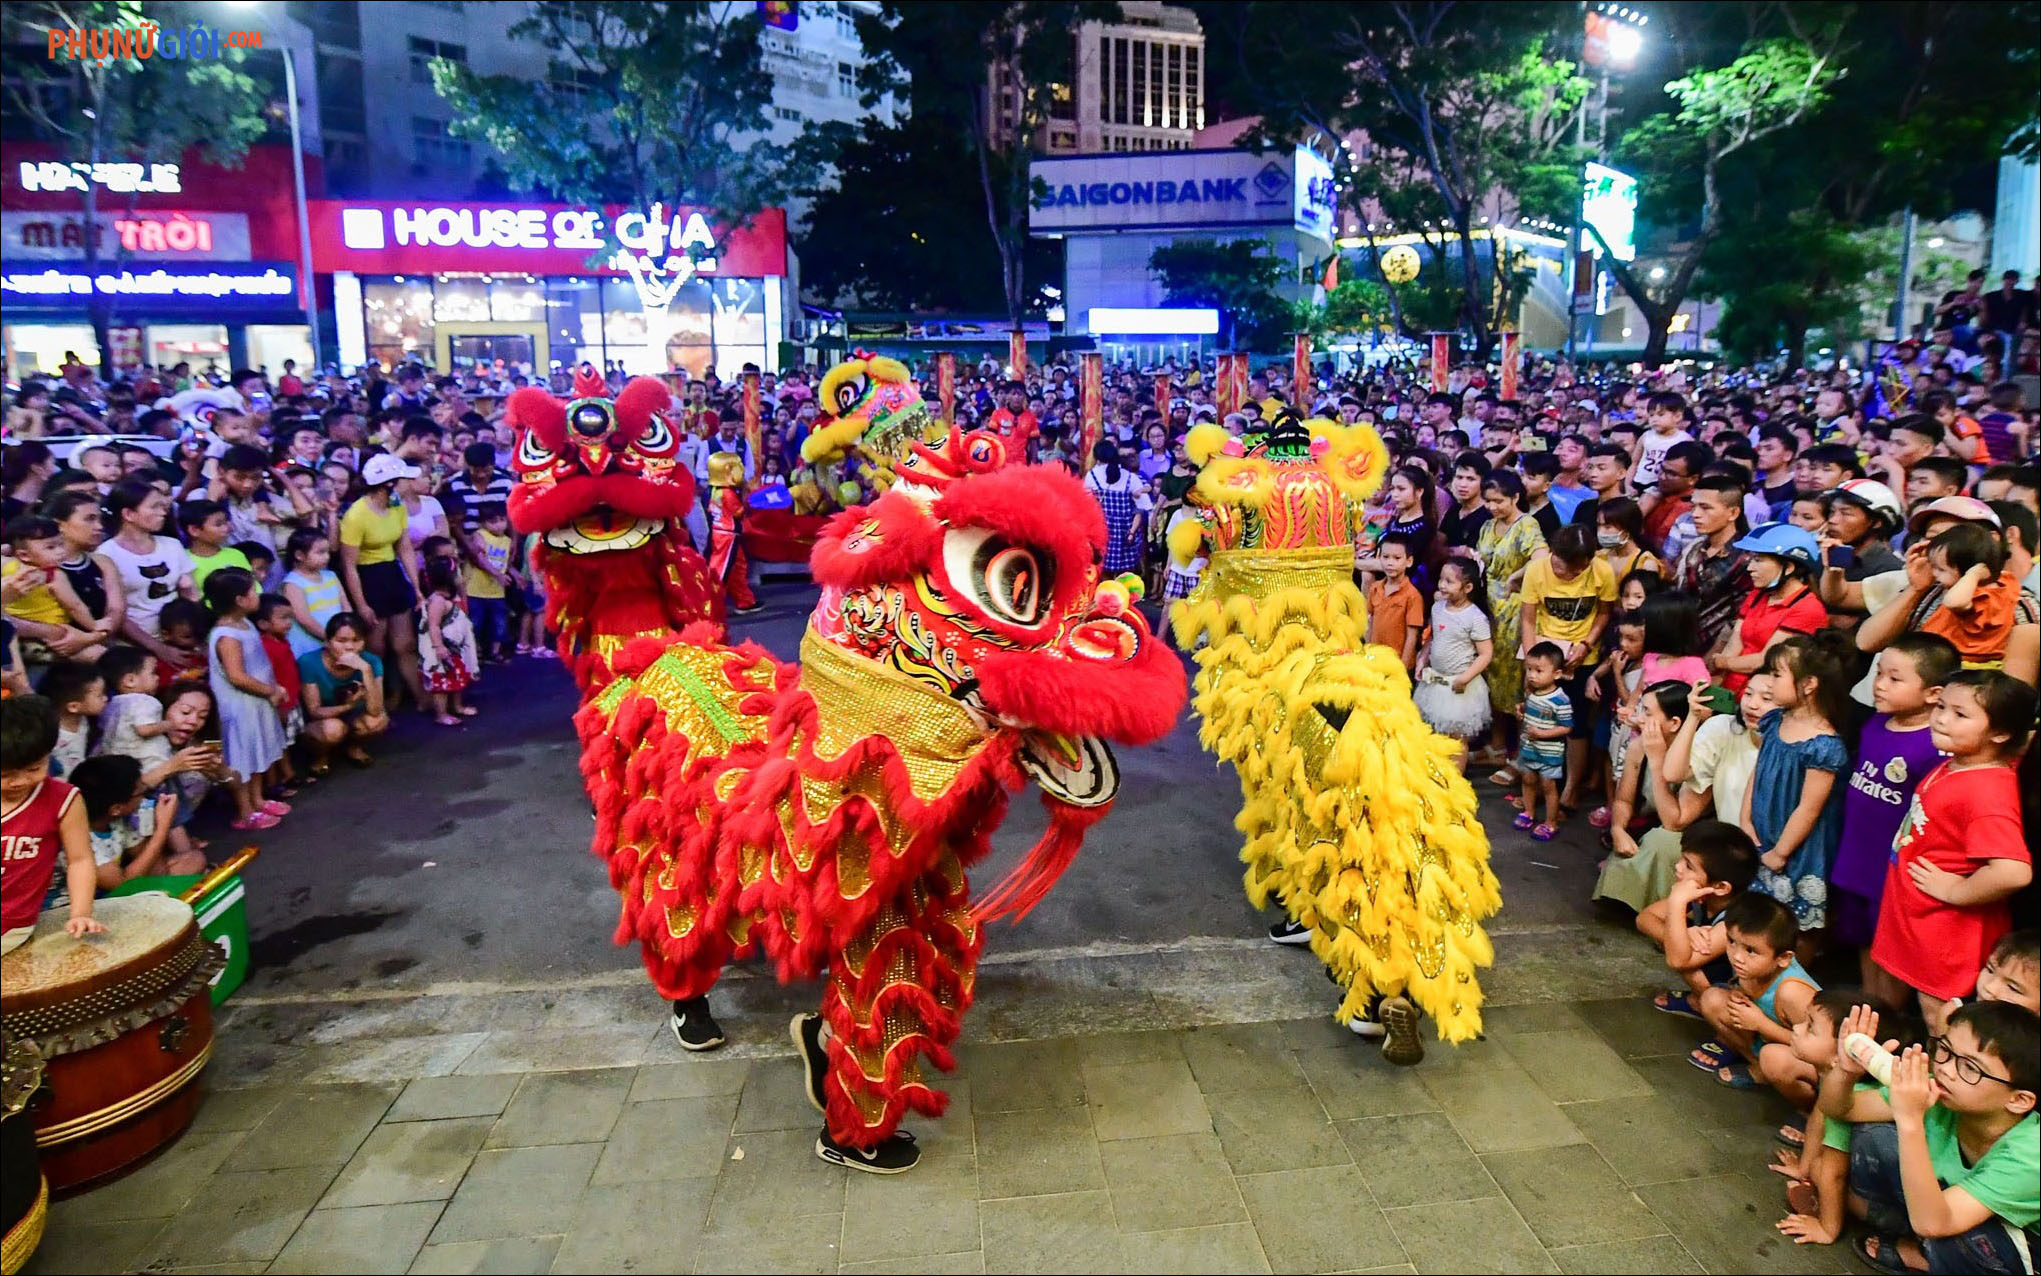 Sắp đến Trung thu rồi! Đây là một trong những lễ hội quan trọng nhất trong năm, đặc biệt ở Việt Nam. Xem những bức ảnh về Trung thu sẽ giúp bạn hiểu rõ hơn về tín ngưỡng và truyền thống trong lễ hội này. Hãy cùng xem và trải nghiệm không khí đặc biệt của Trung thu bạn nhé!